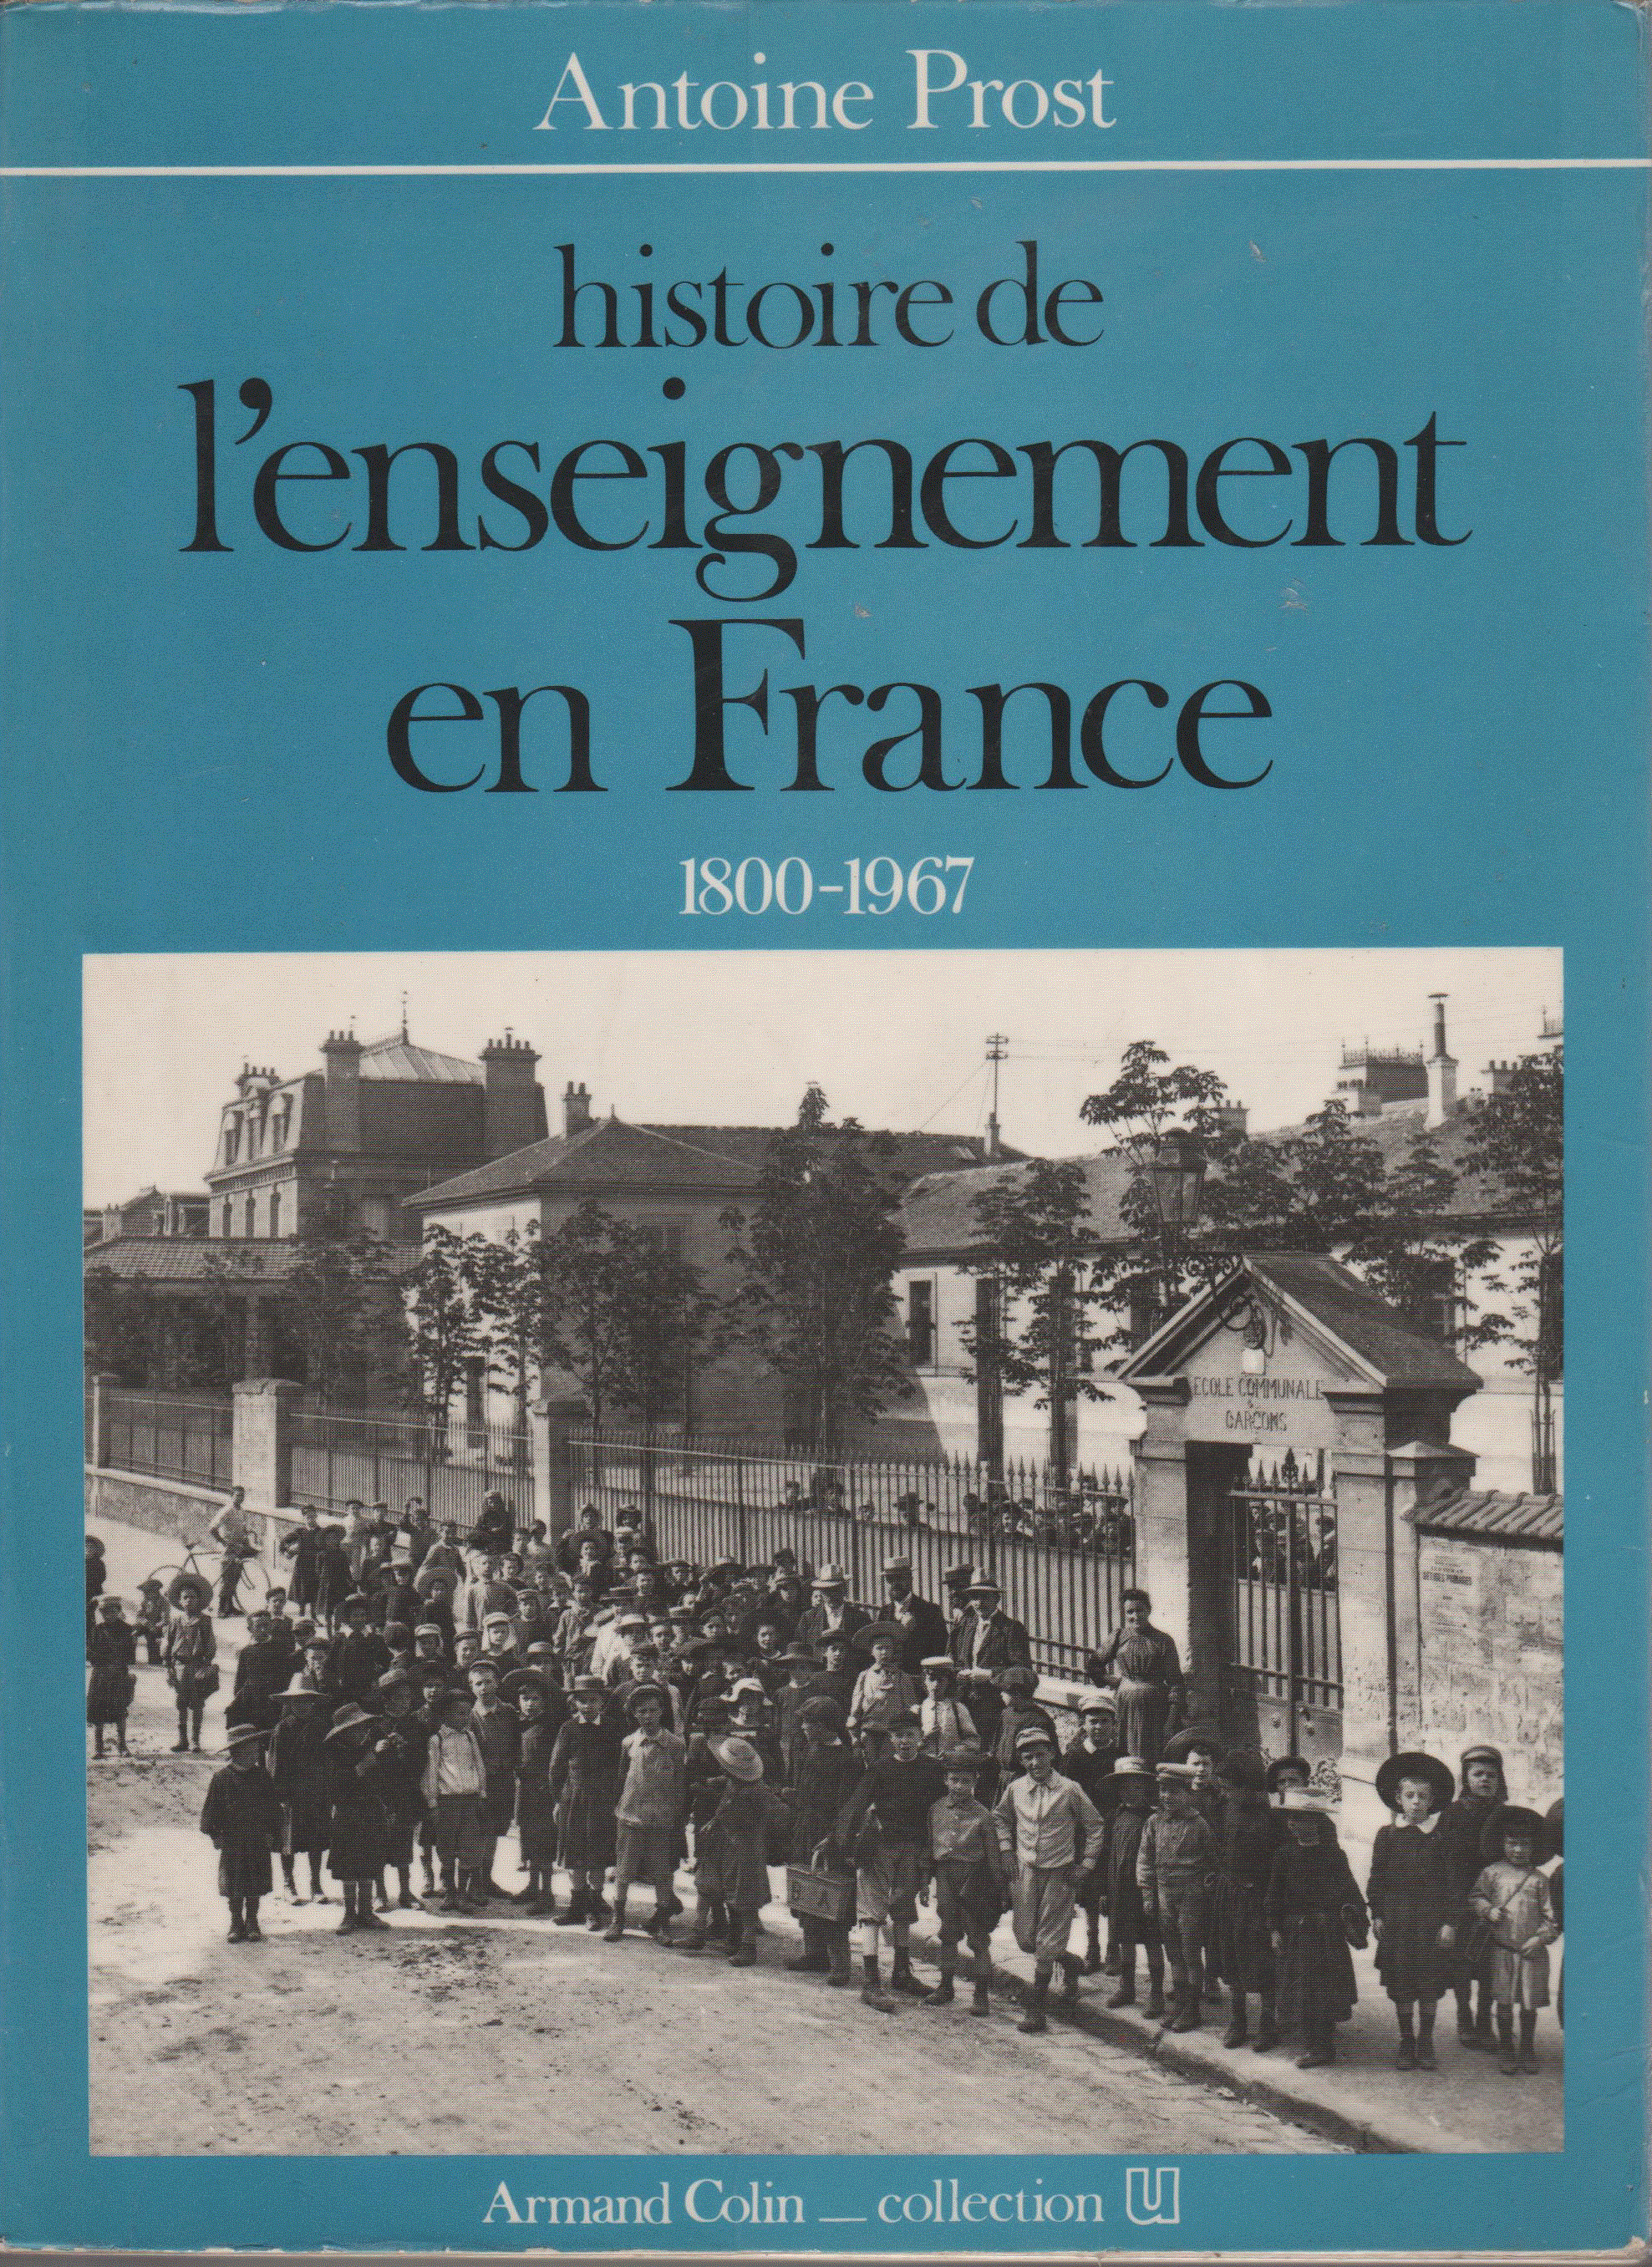 Histoire de l'enseignement en France 1800-1967